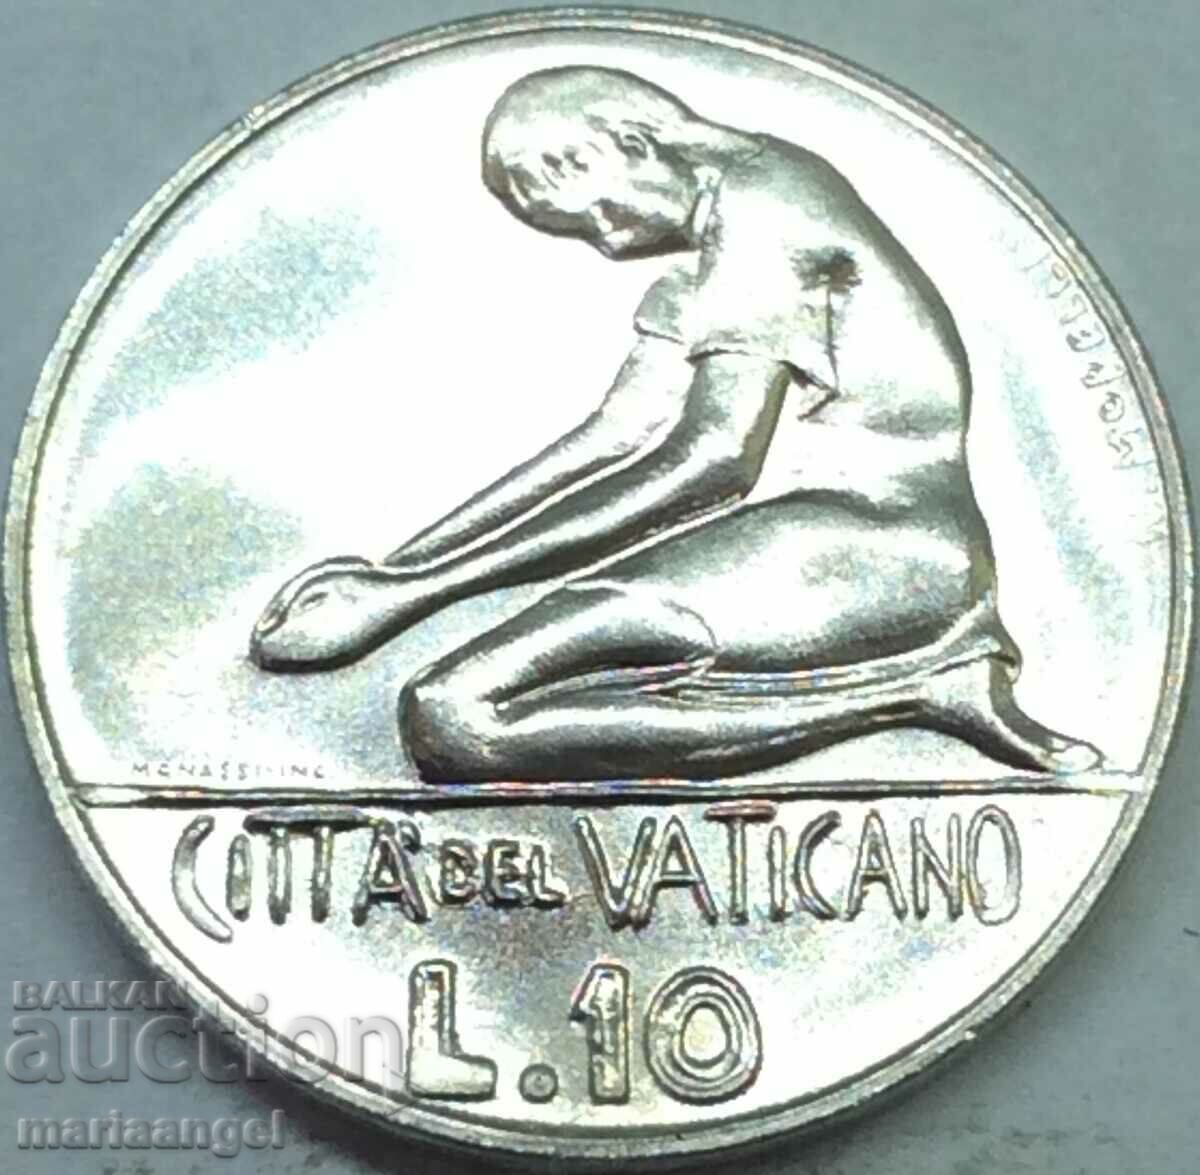 10 lire 1978 Vatican